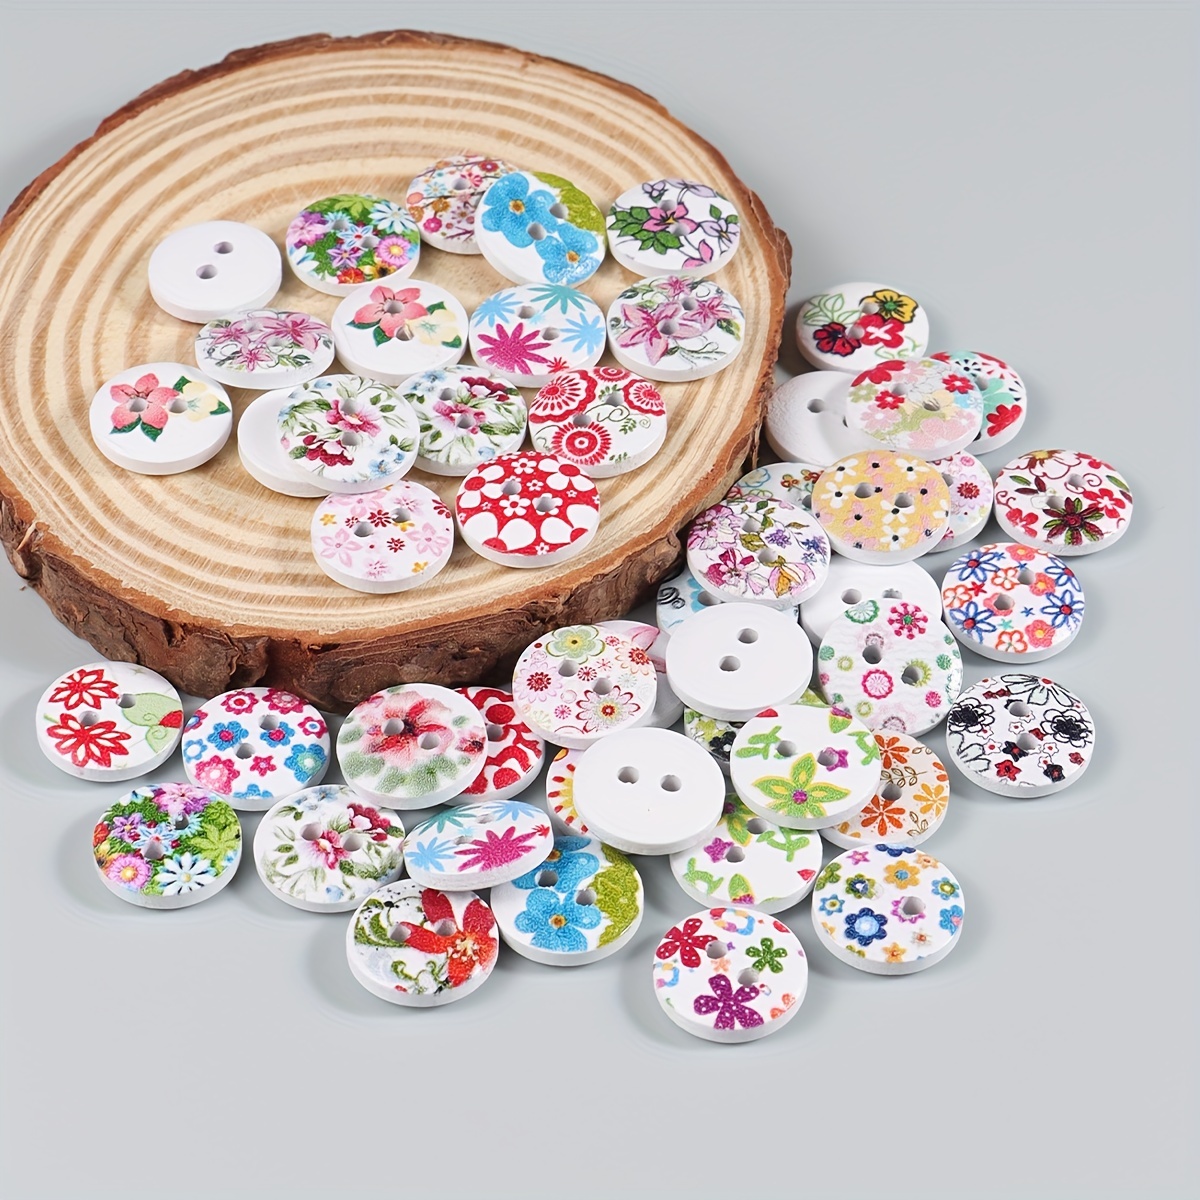 10mm WOODEN FLOWER BUTTONS X 10, Cute Flower Design Wooden Buttons,  Pink/red Mix Flower Buttons Button Decorations, Flower Style Buttons 